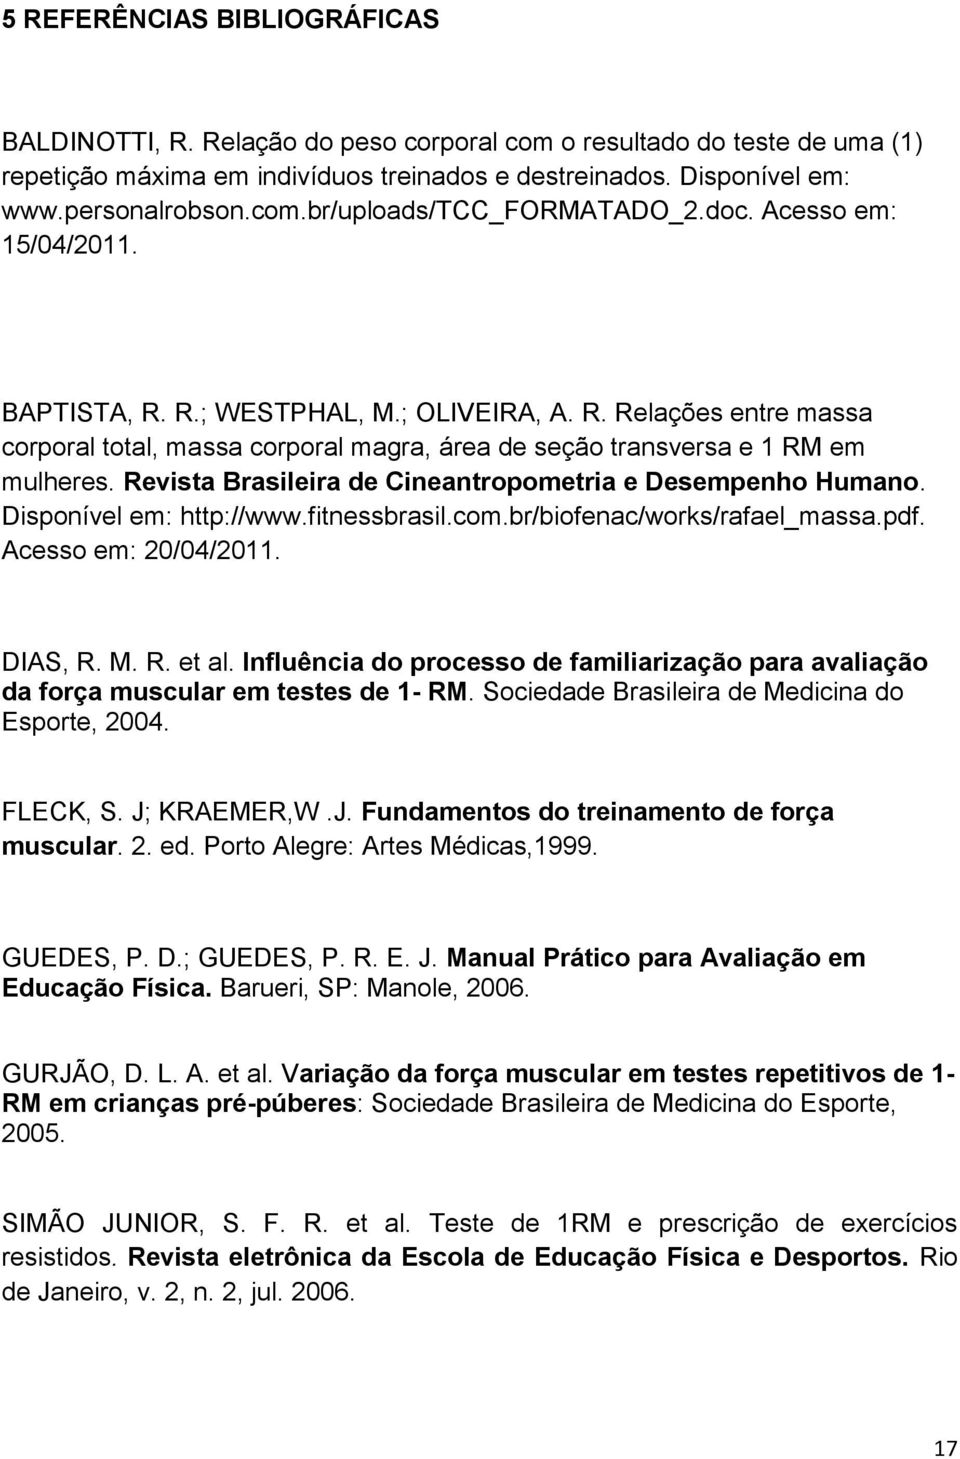 Revista Brasileira de Cineantropometria e Desempenho Humano. Disponível em: http://www.fitnessbrasil.com.br/biofenac/works/rafael_massa.pdf. Acesso em: 20/04/2011. DIAS, R. M. R. et al.